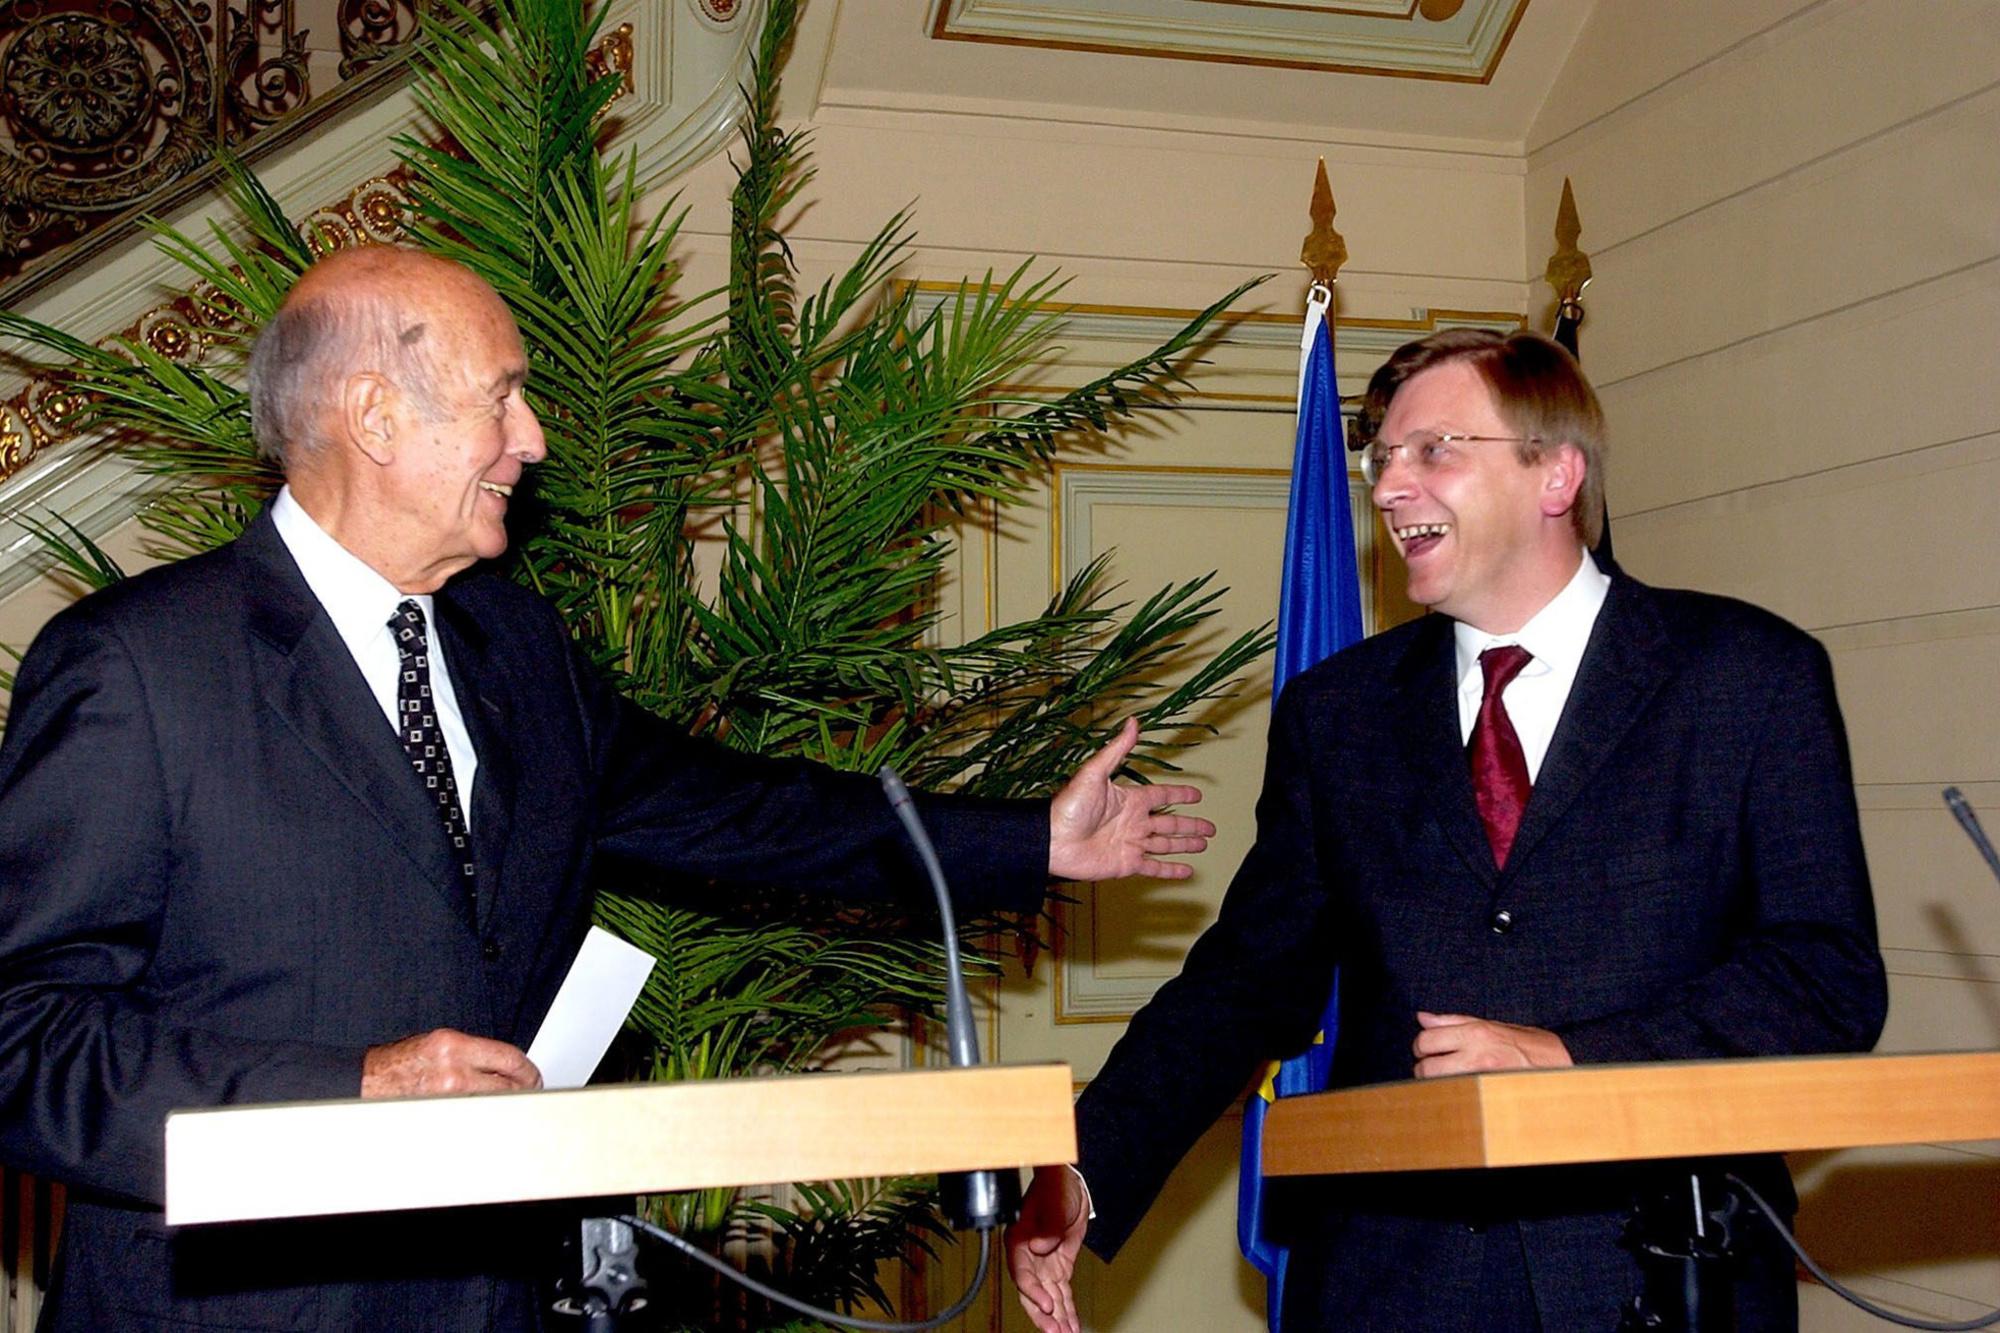 Décès de Valéry Giscard d'Estaing, le jeune président qui voulait moderniser la France (portrait)